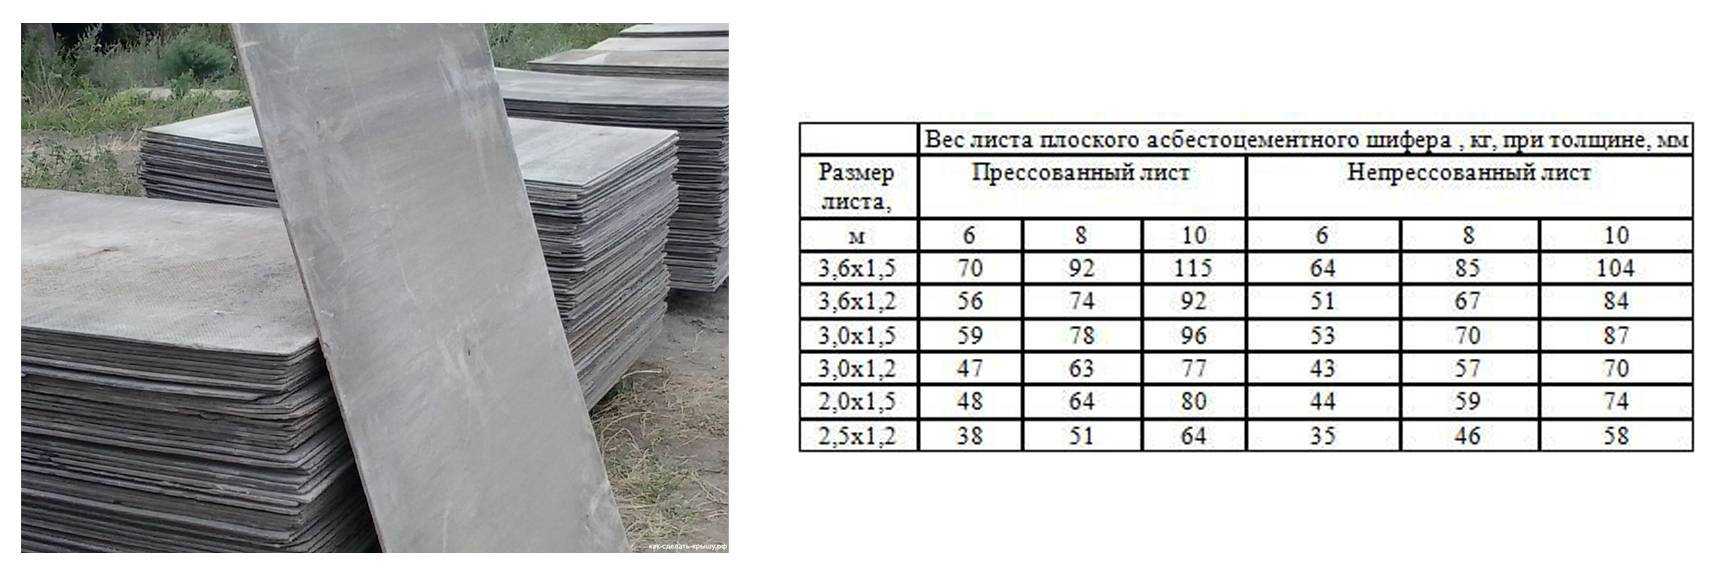 Размеры листа плоского шифера и его технические характеристики: применение, производство и т.д